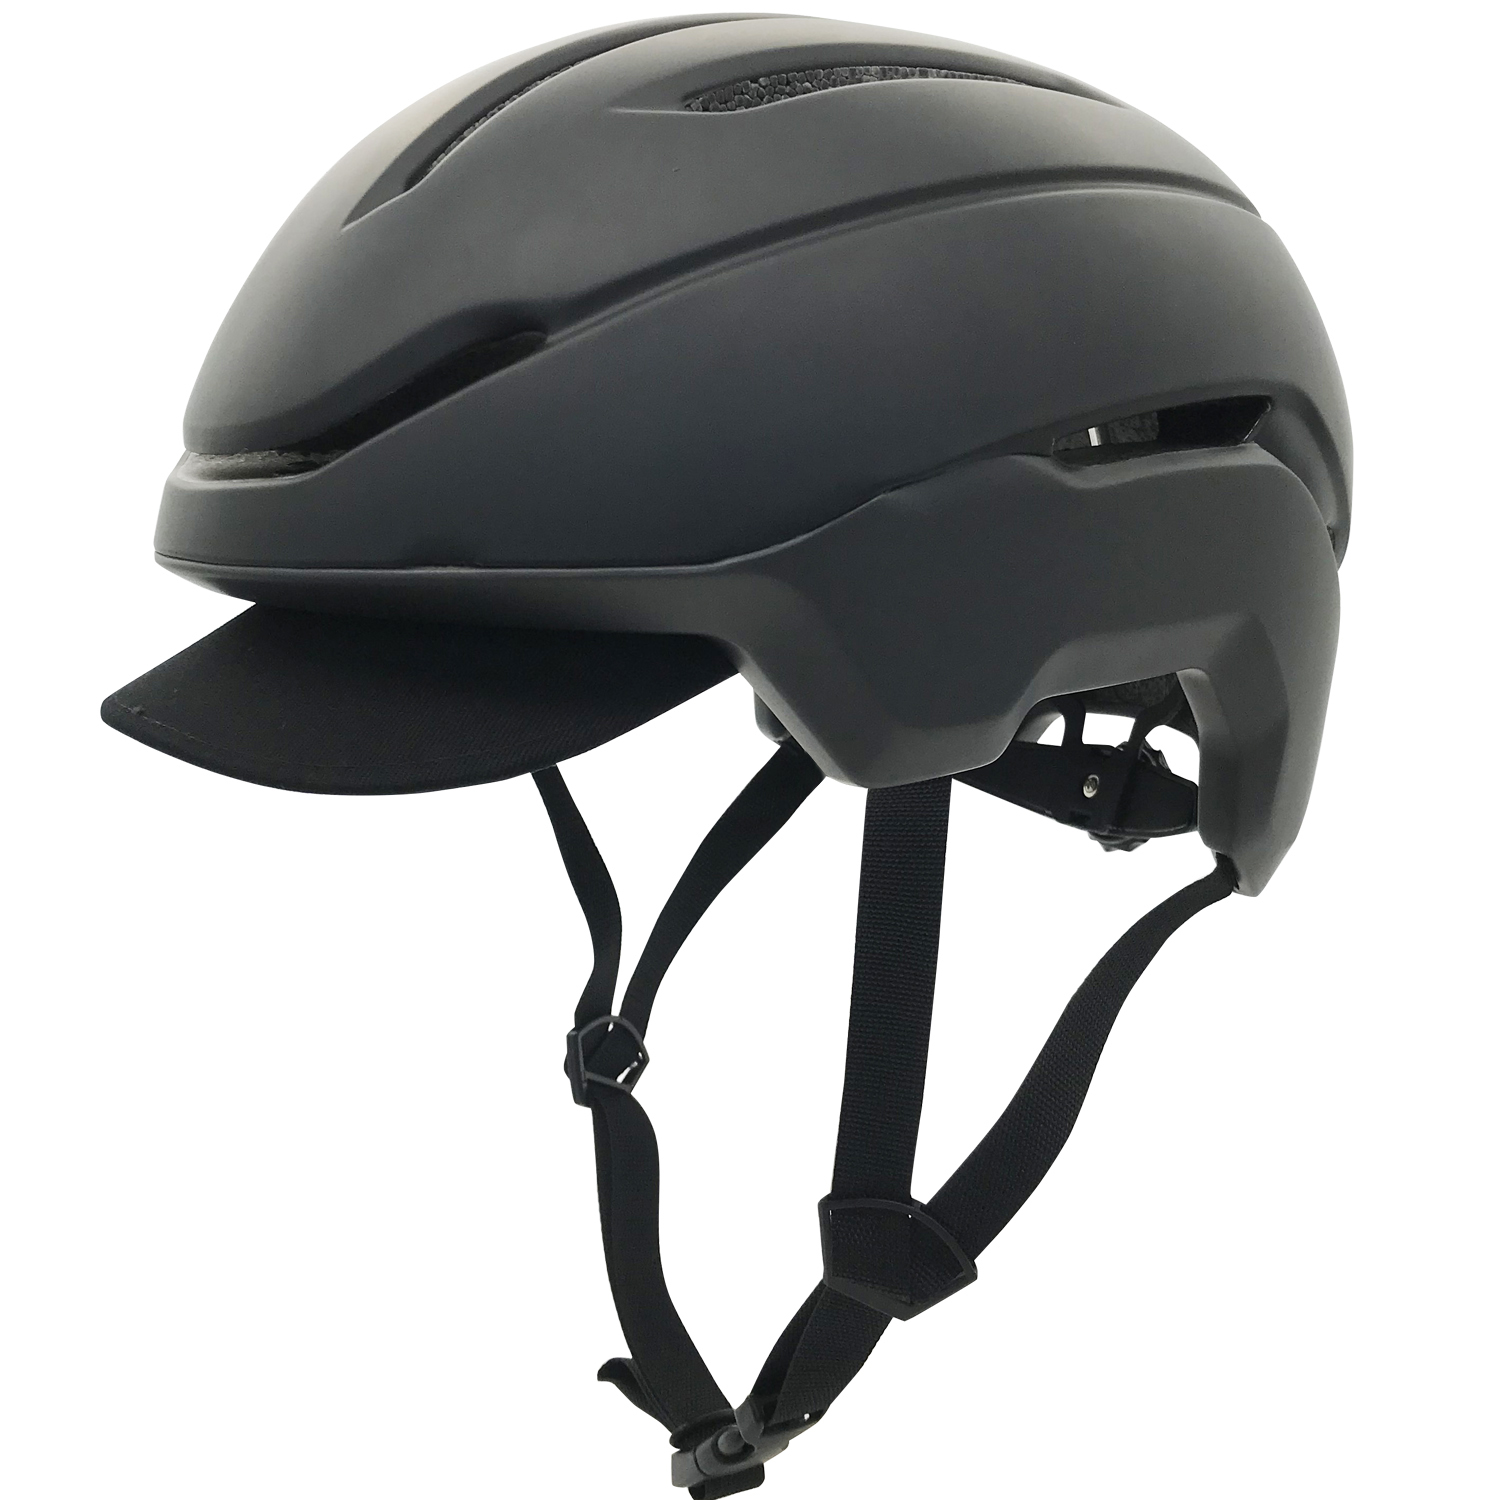 One of Hottest for Mountain Bike Trail Helmet - Commuter helmet VU103-Black – Vital